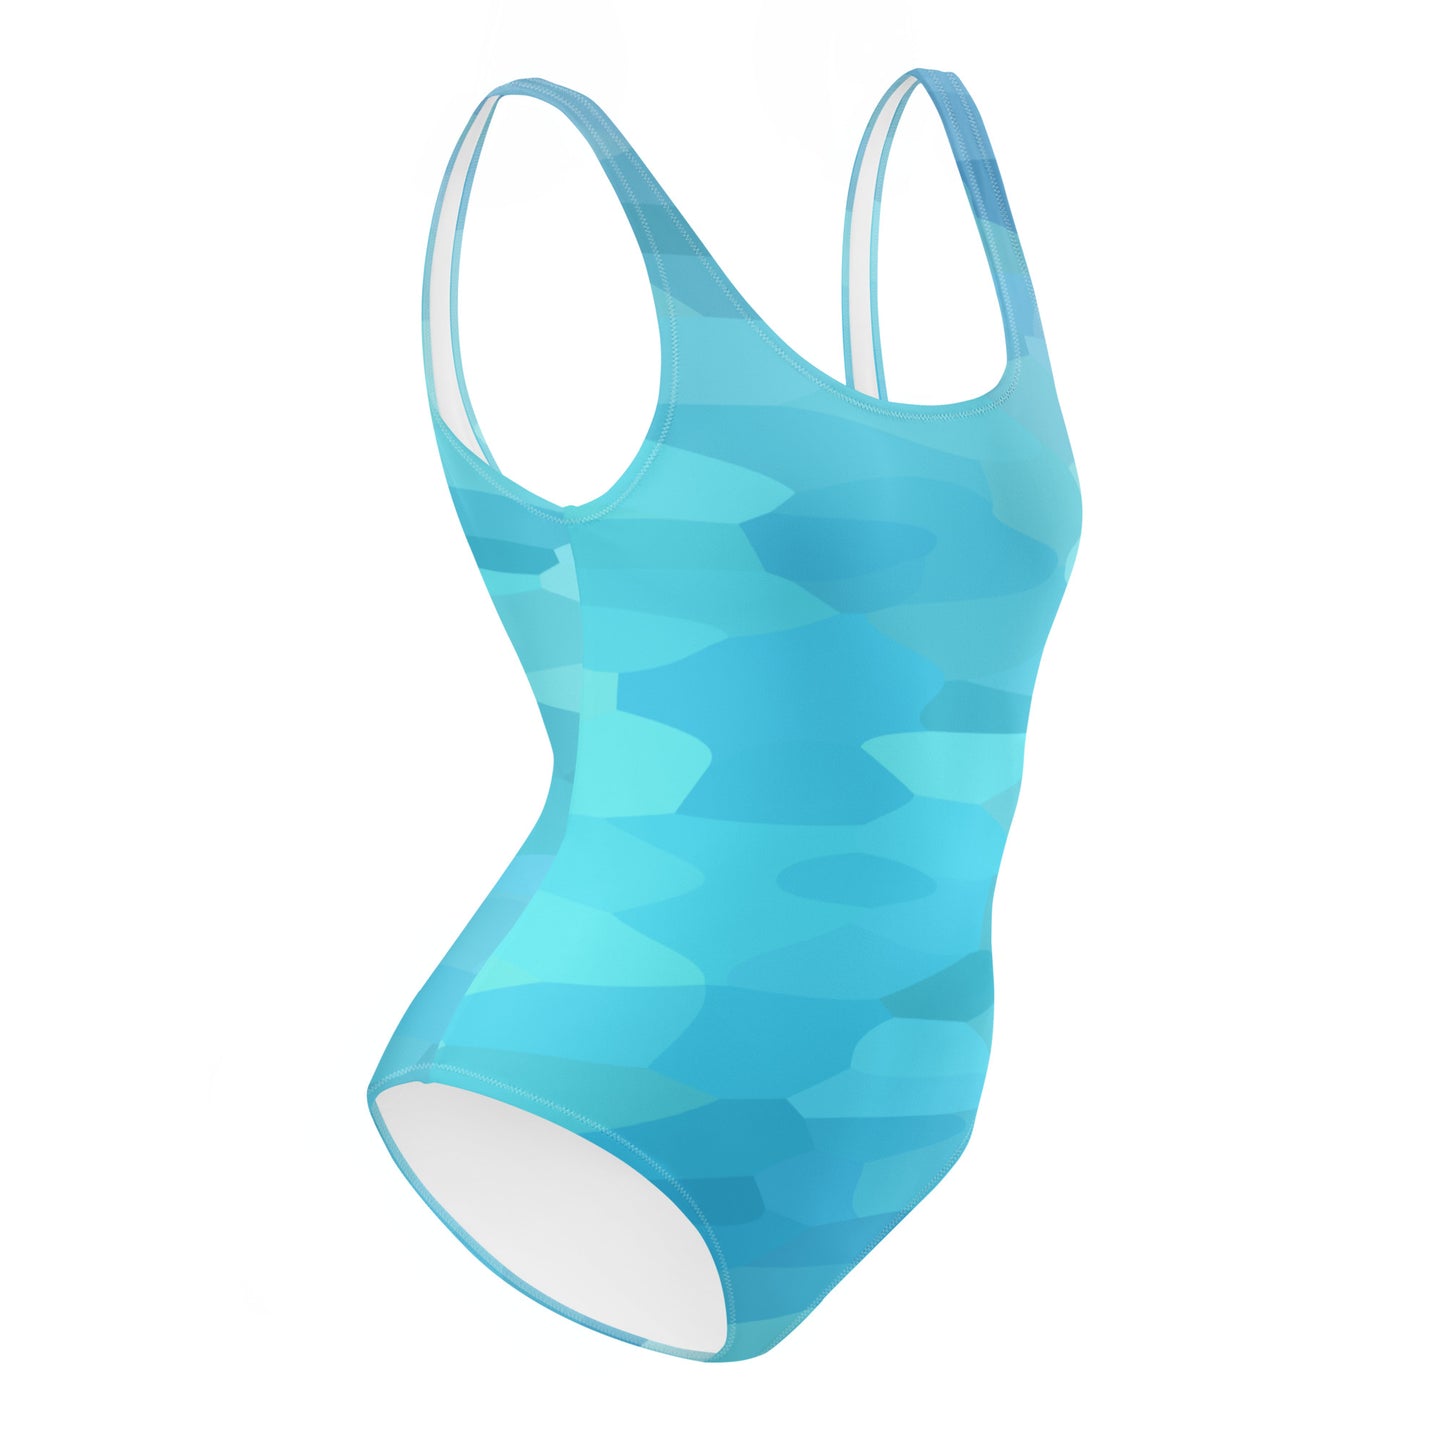 Carpe Diem Gear | Women's Swimsuit | Blue Water Camo | Women's One-Piece Swimsuit UPF 50+